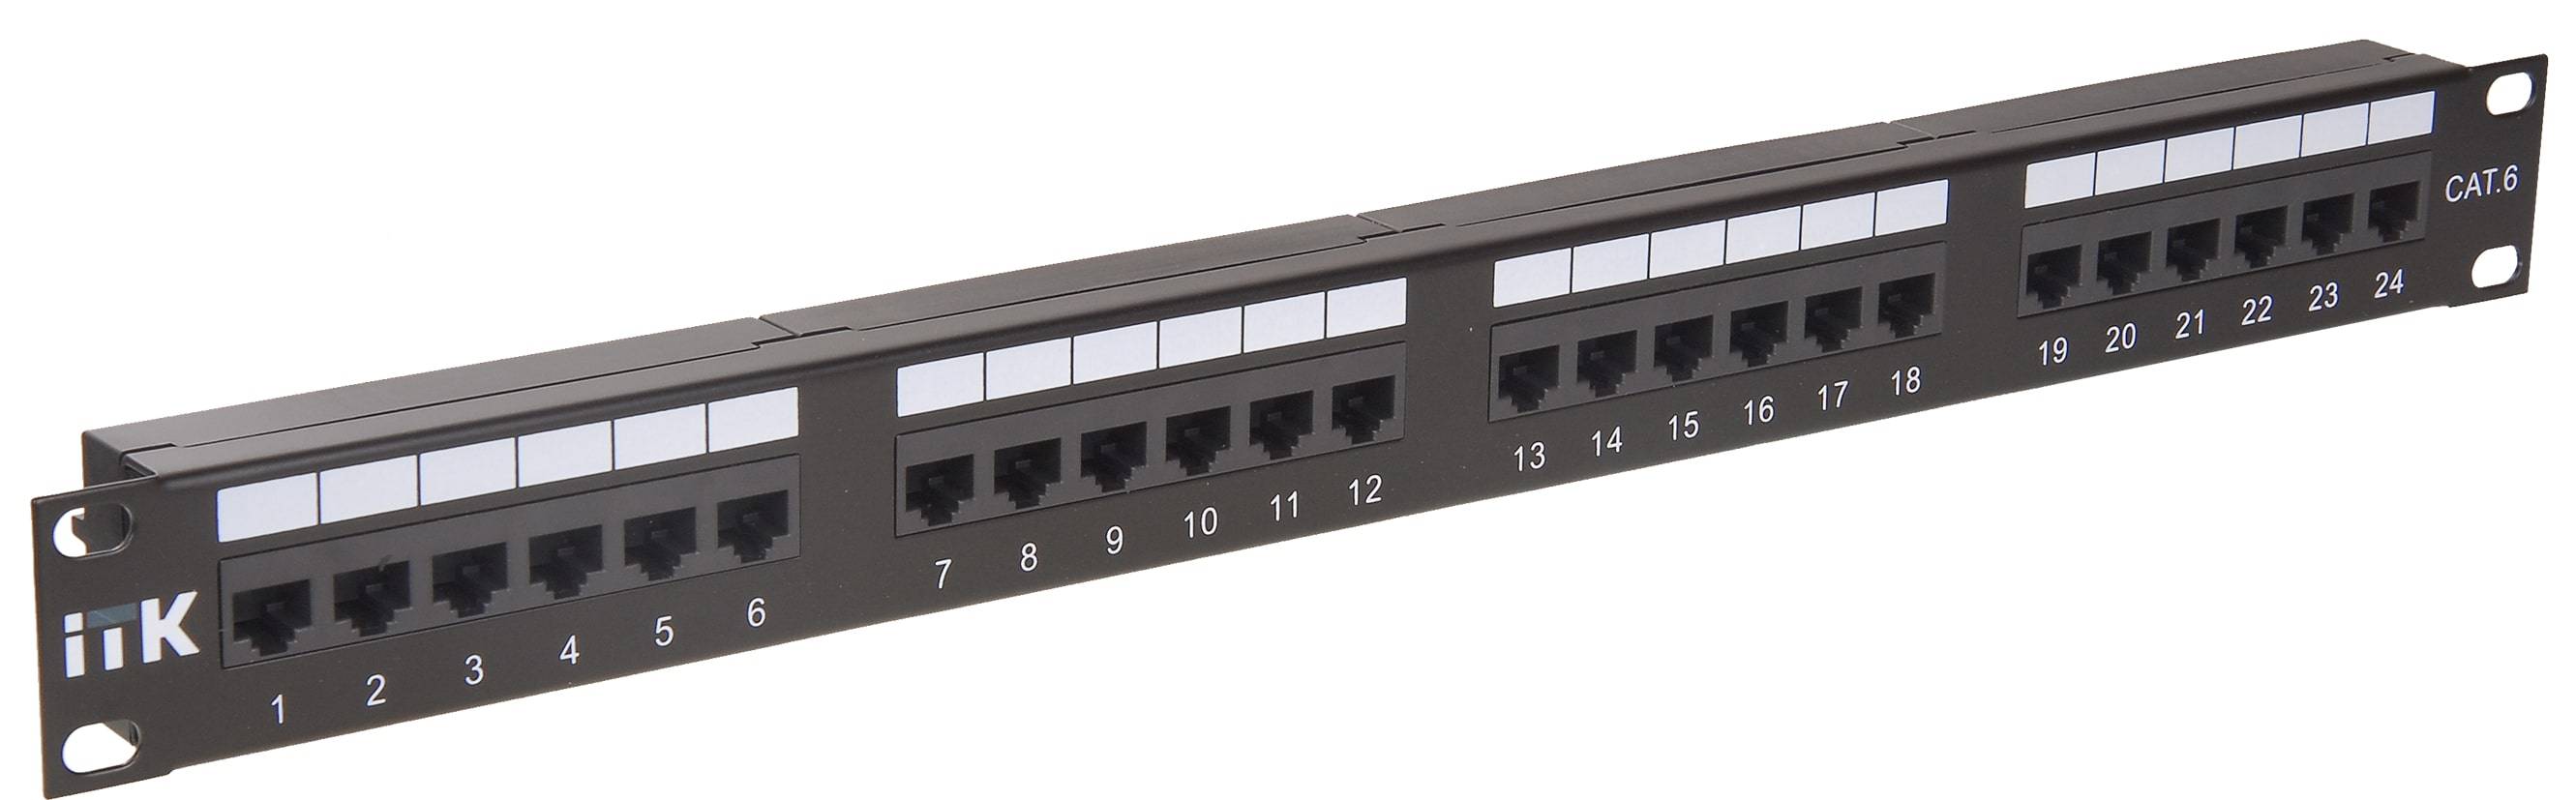 ITK 1U патч-панель кат.5Е UTP, 24 порта (Dual)